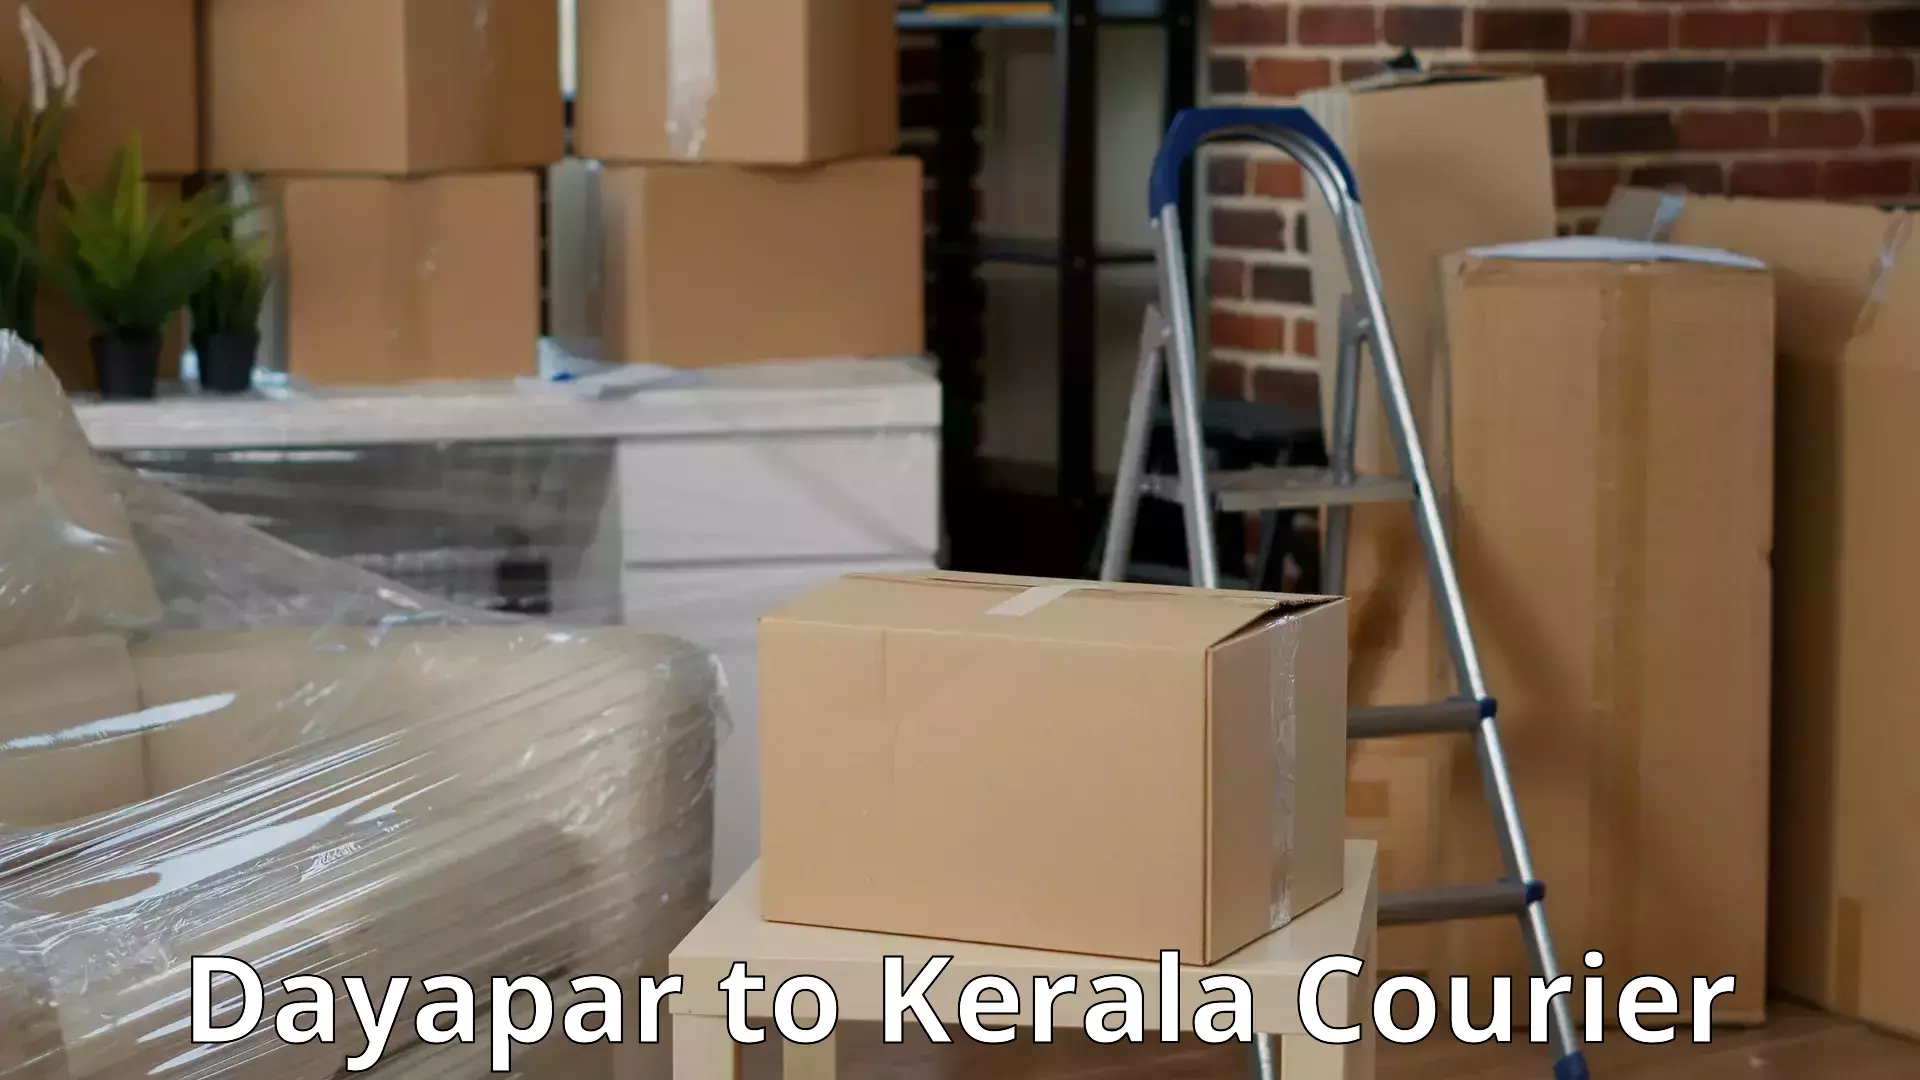 Furniture moving experts Dayapar to Cherthala